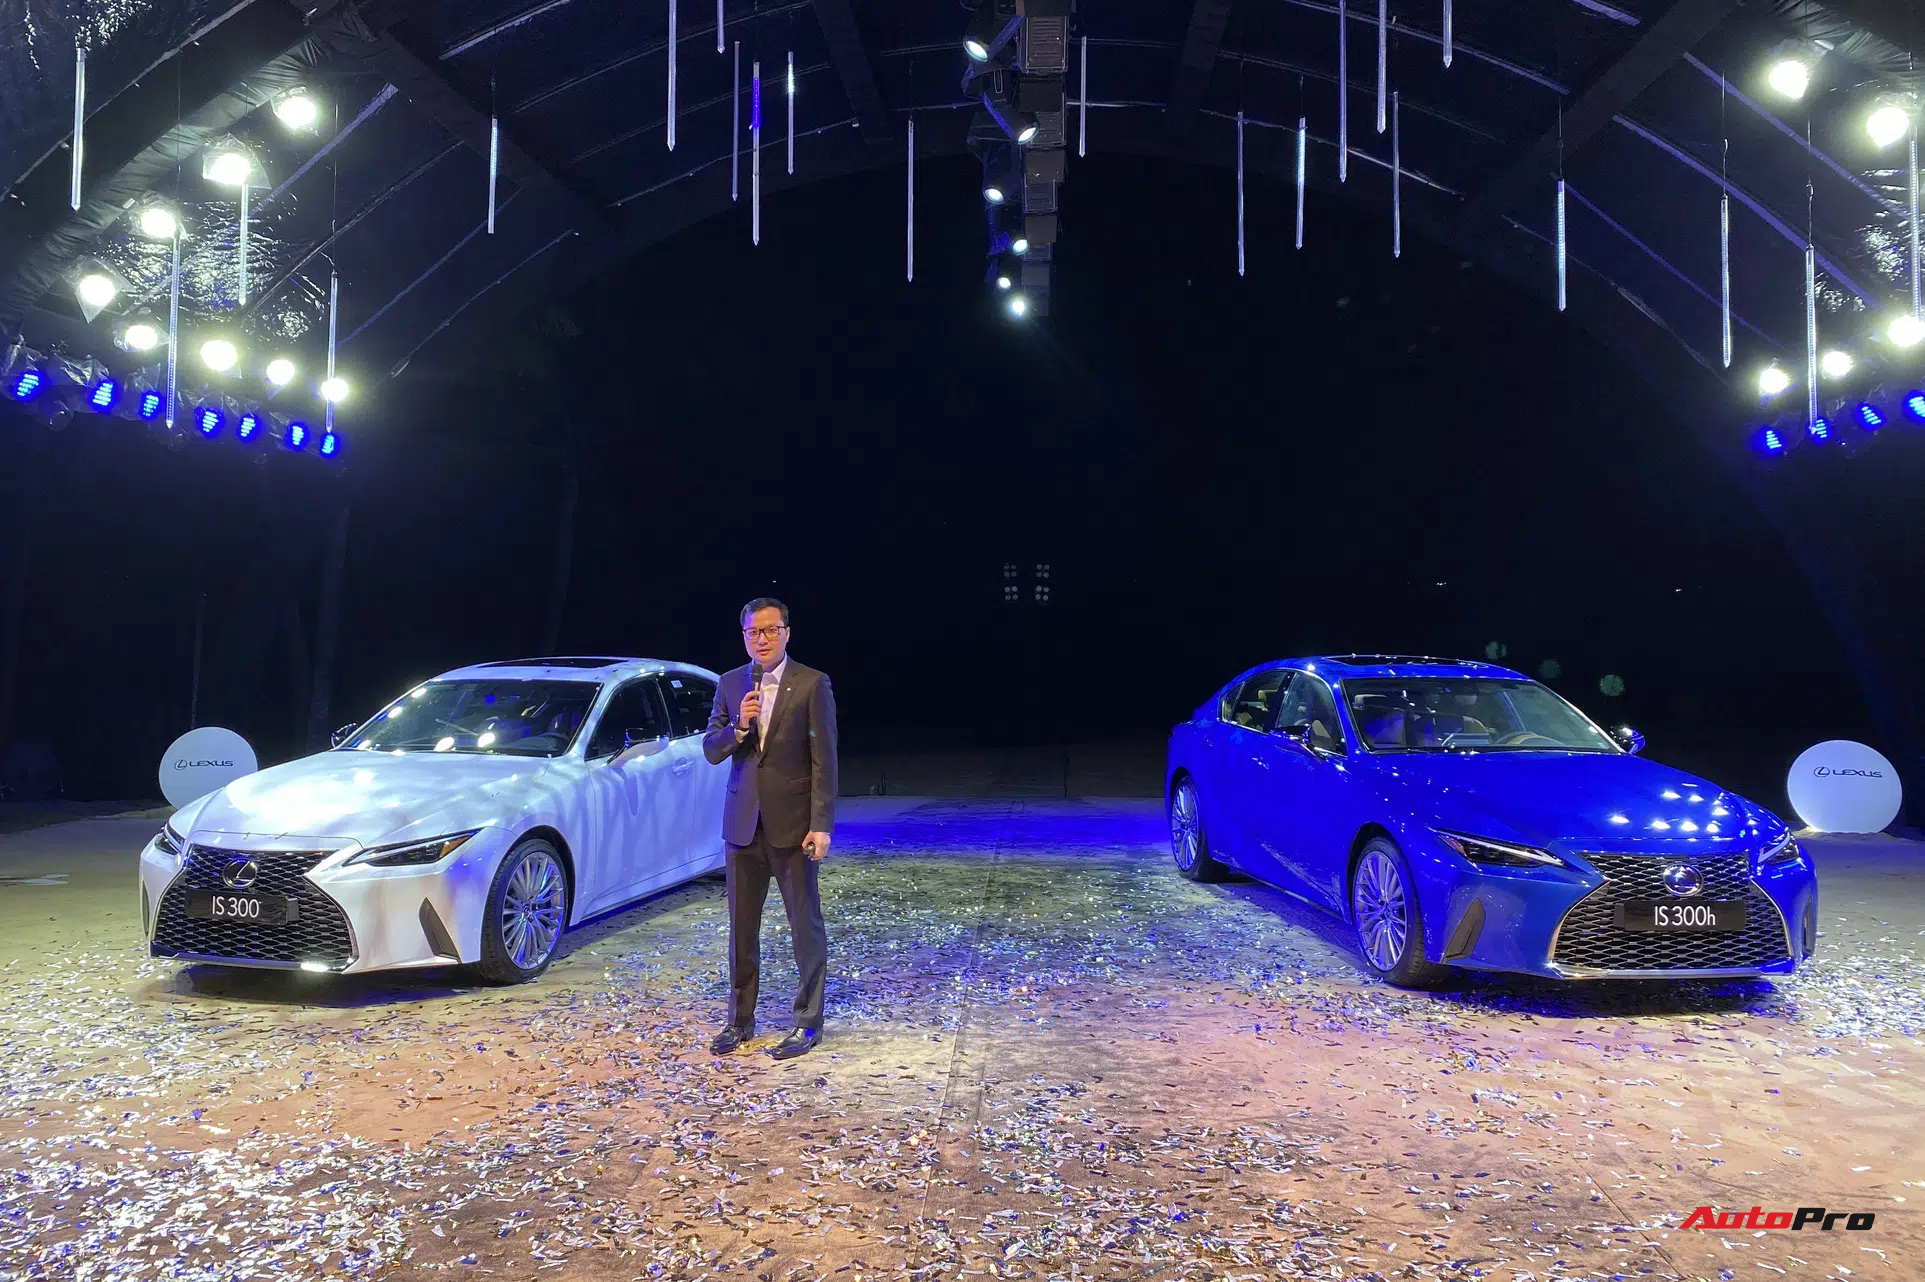 Ra mắt Lexus IS 2021 tại Việt Nam: 3 phiên bản, giá từ 2,13 tỷ đồng, đấu Mercedes-Benz C-Class và BMW 3-Series - Ảnh 1.